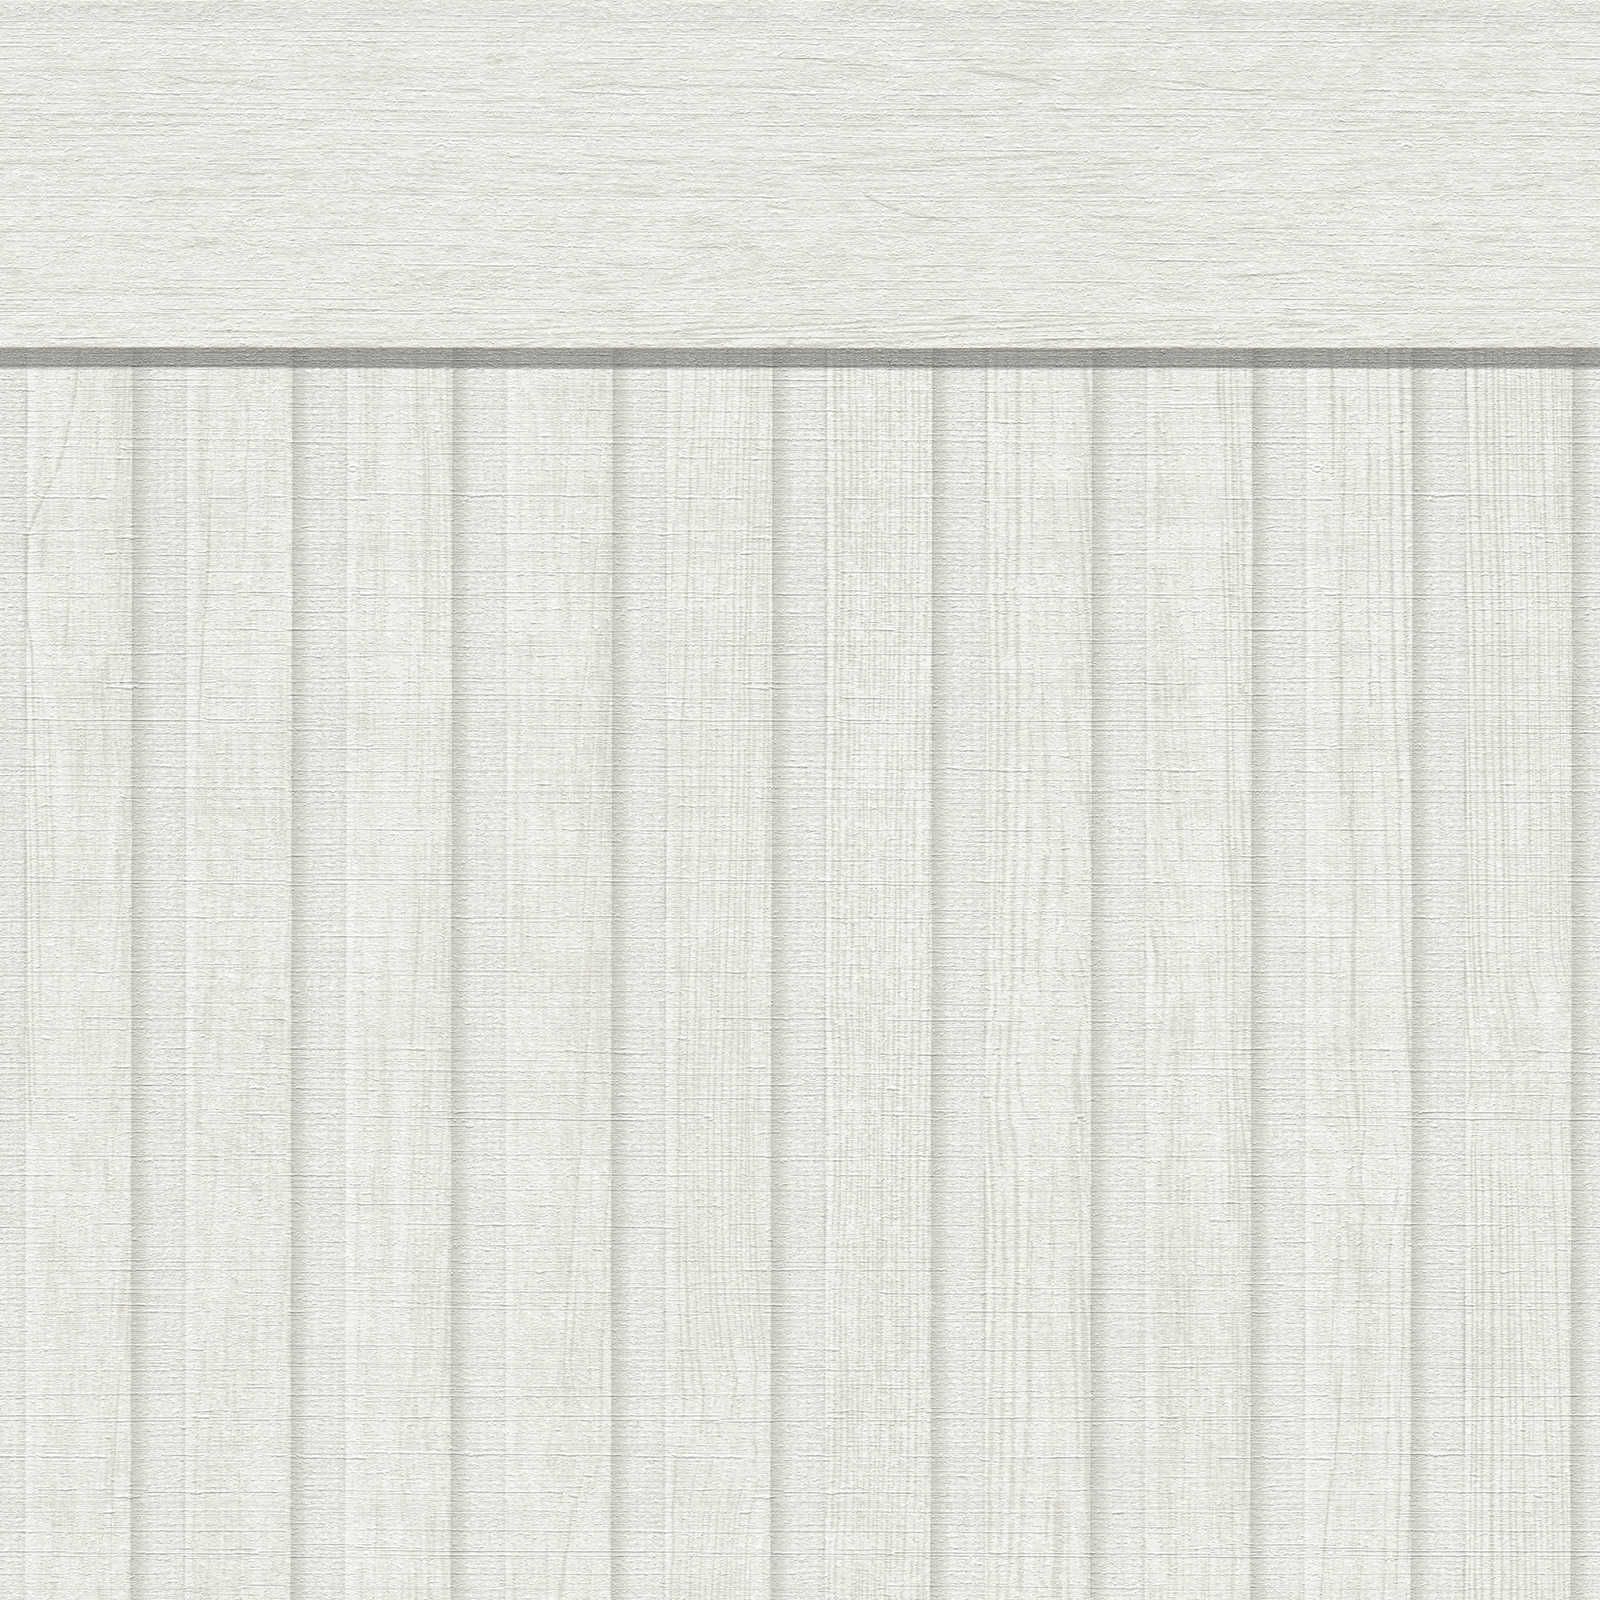 Wandvlies met realistisch akoestisch paneelpatroon van hout - wit, grijs
